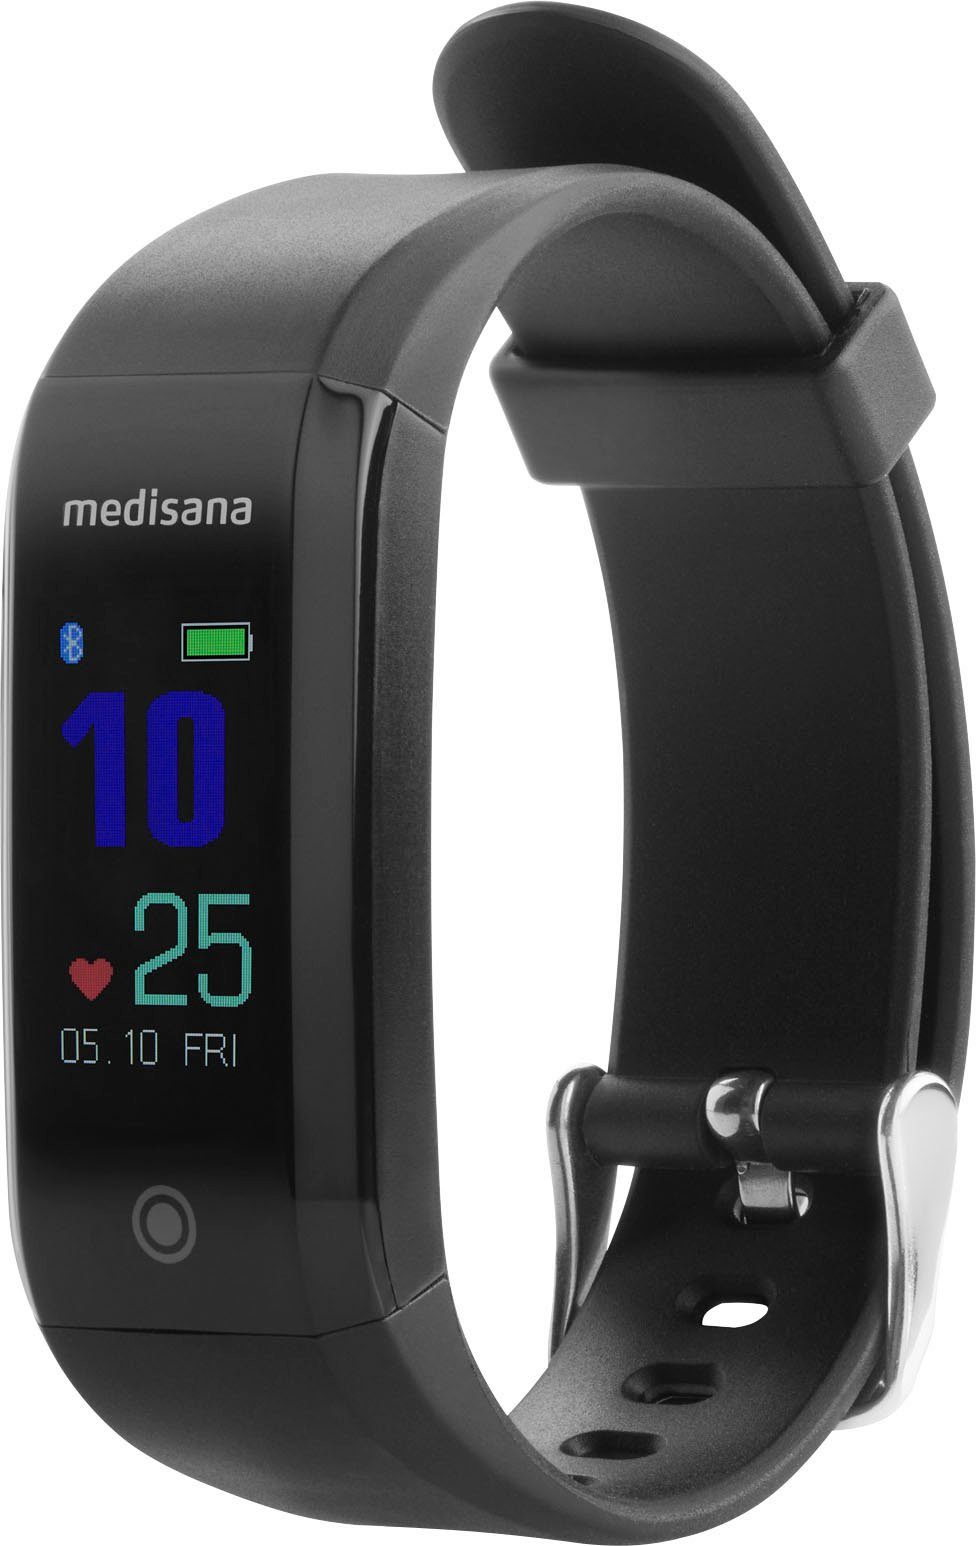 Medisana Activity Tracker Run VitaDock+ Armband), App Vifit (mit kostenfreie